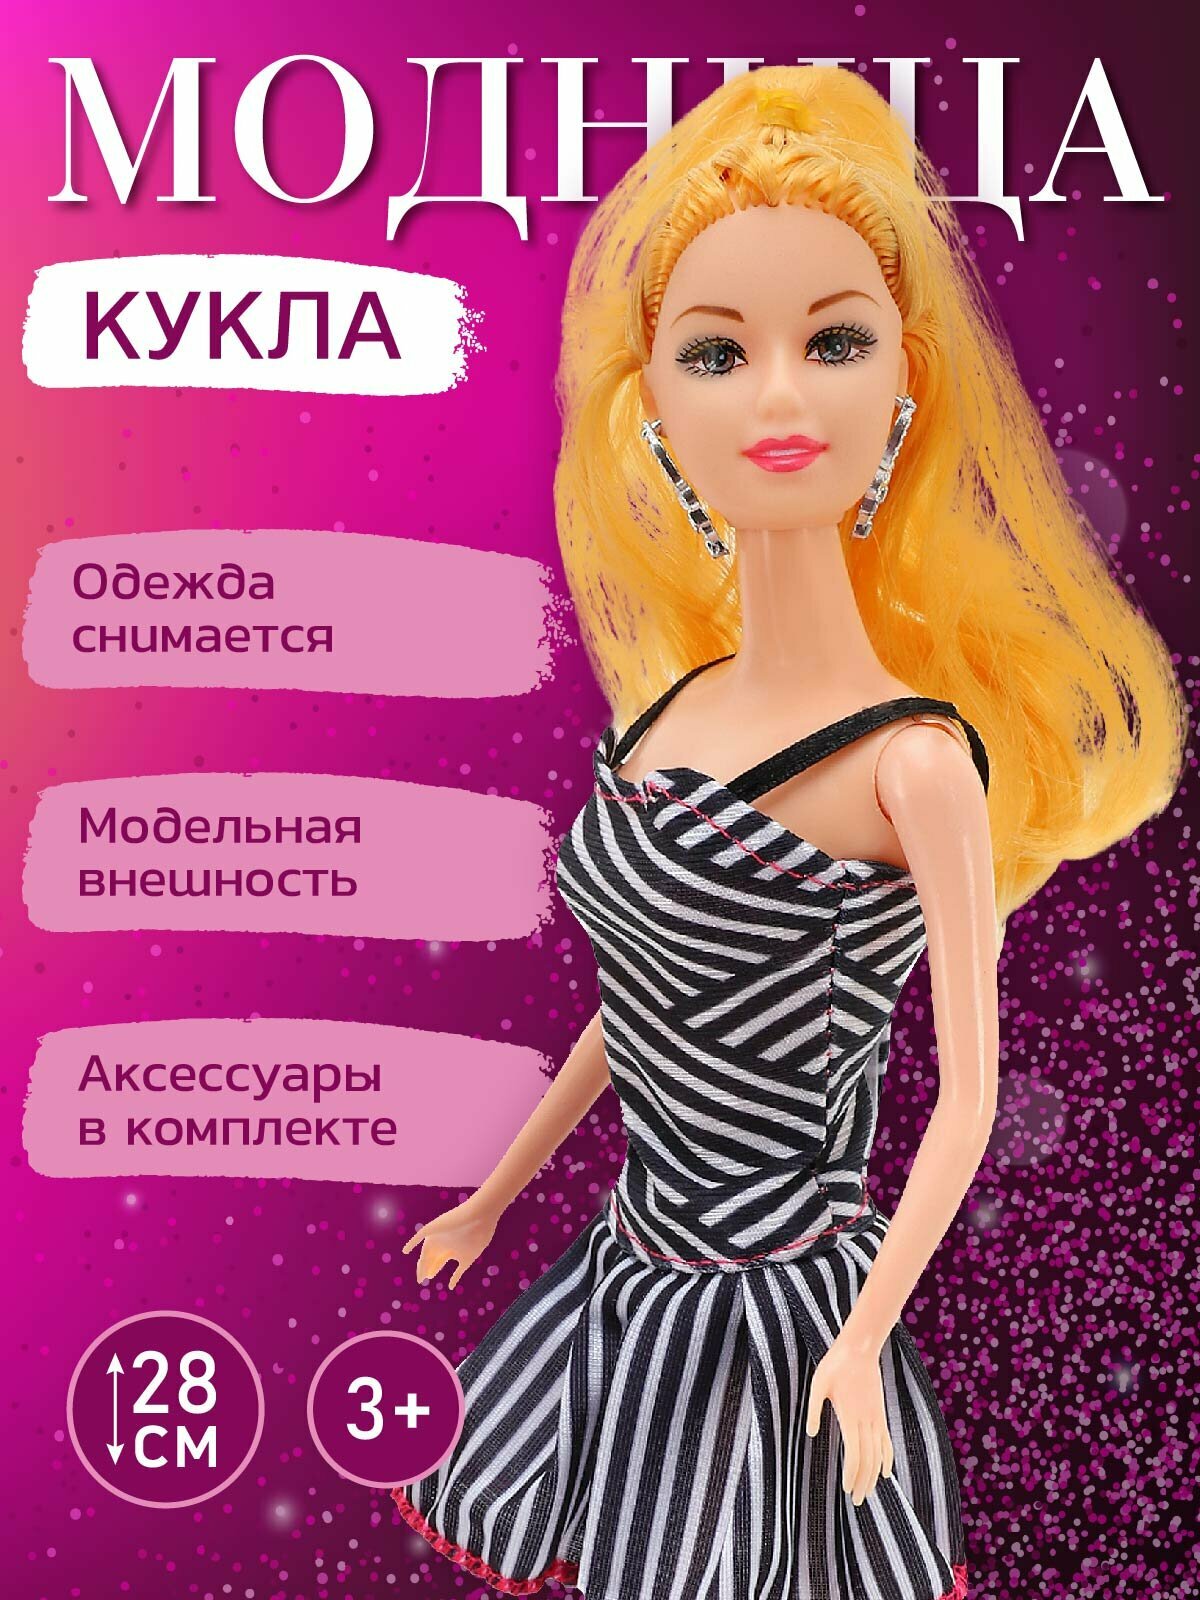 Кукла "Модница" шарнирная, 30 см, аксессуары, JB0210602